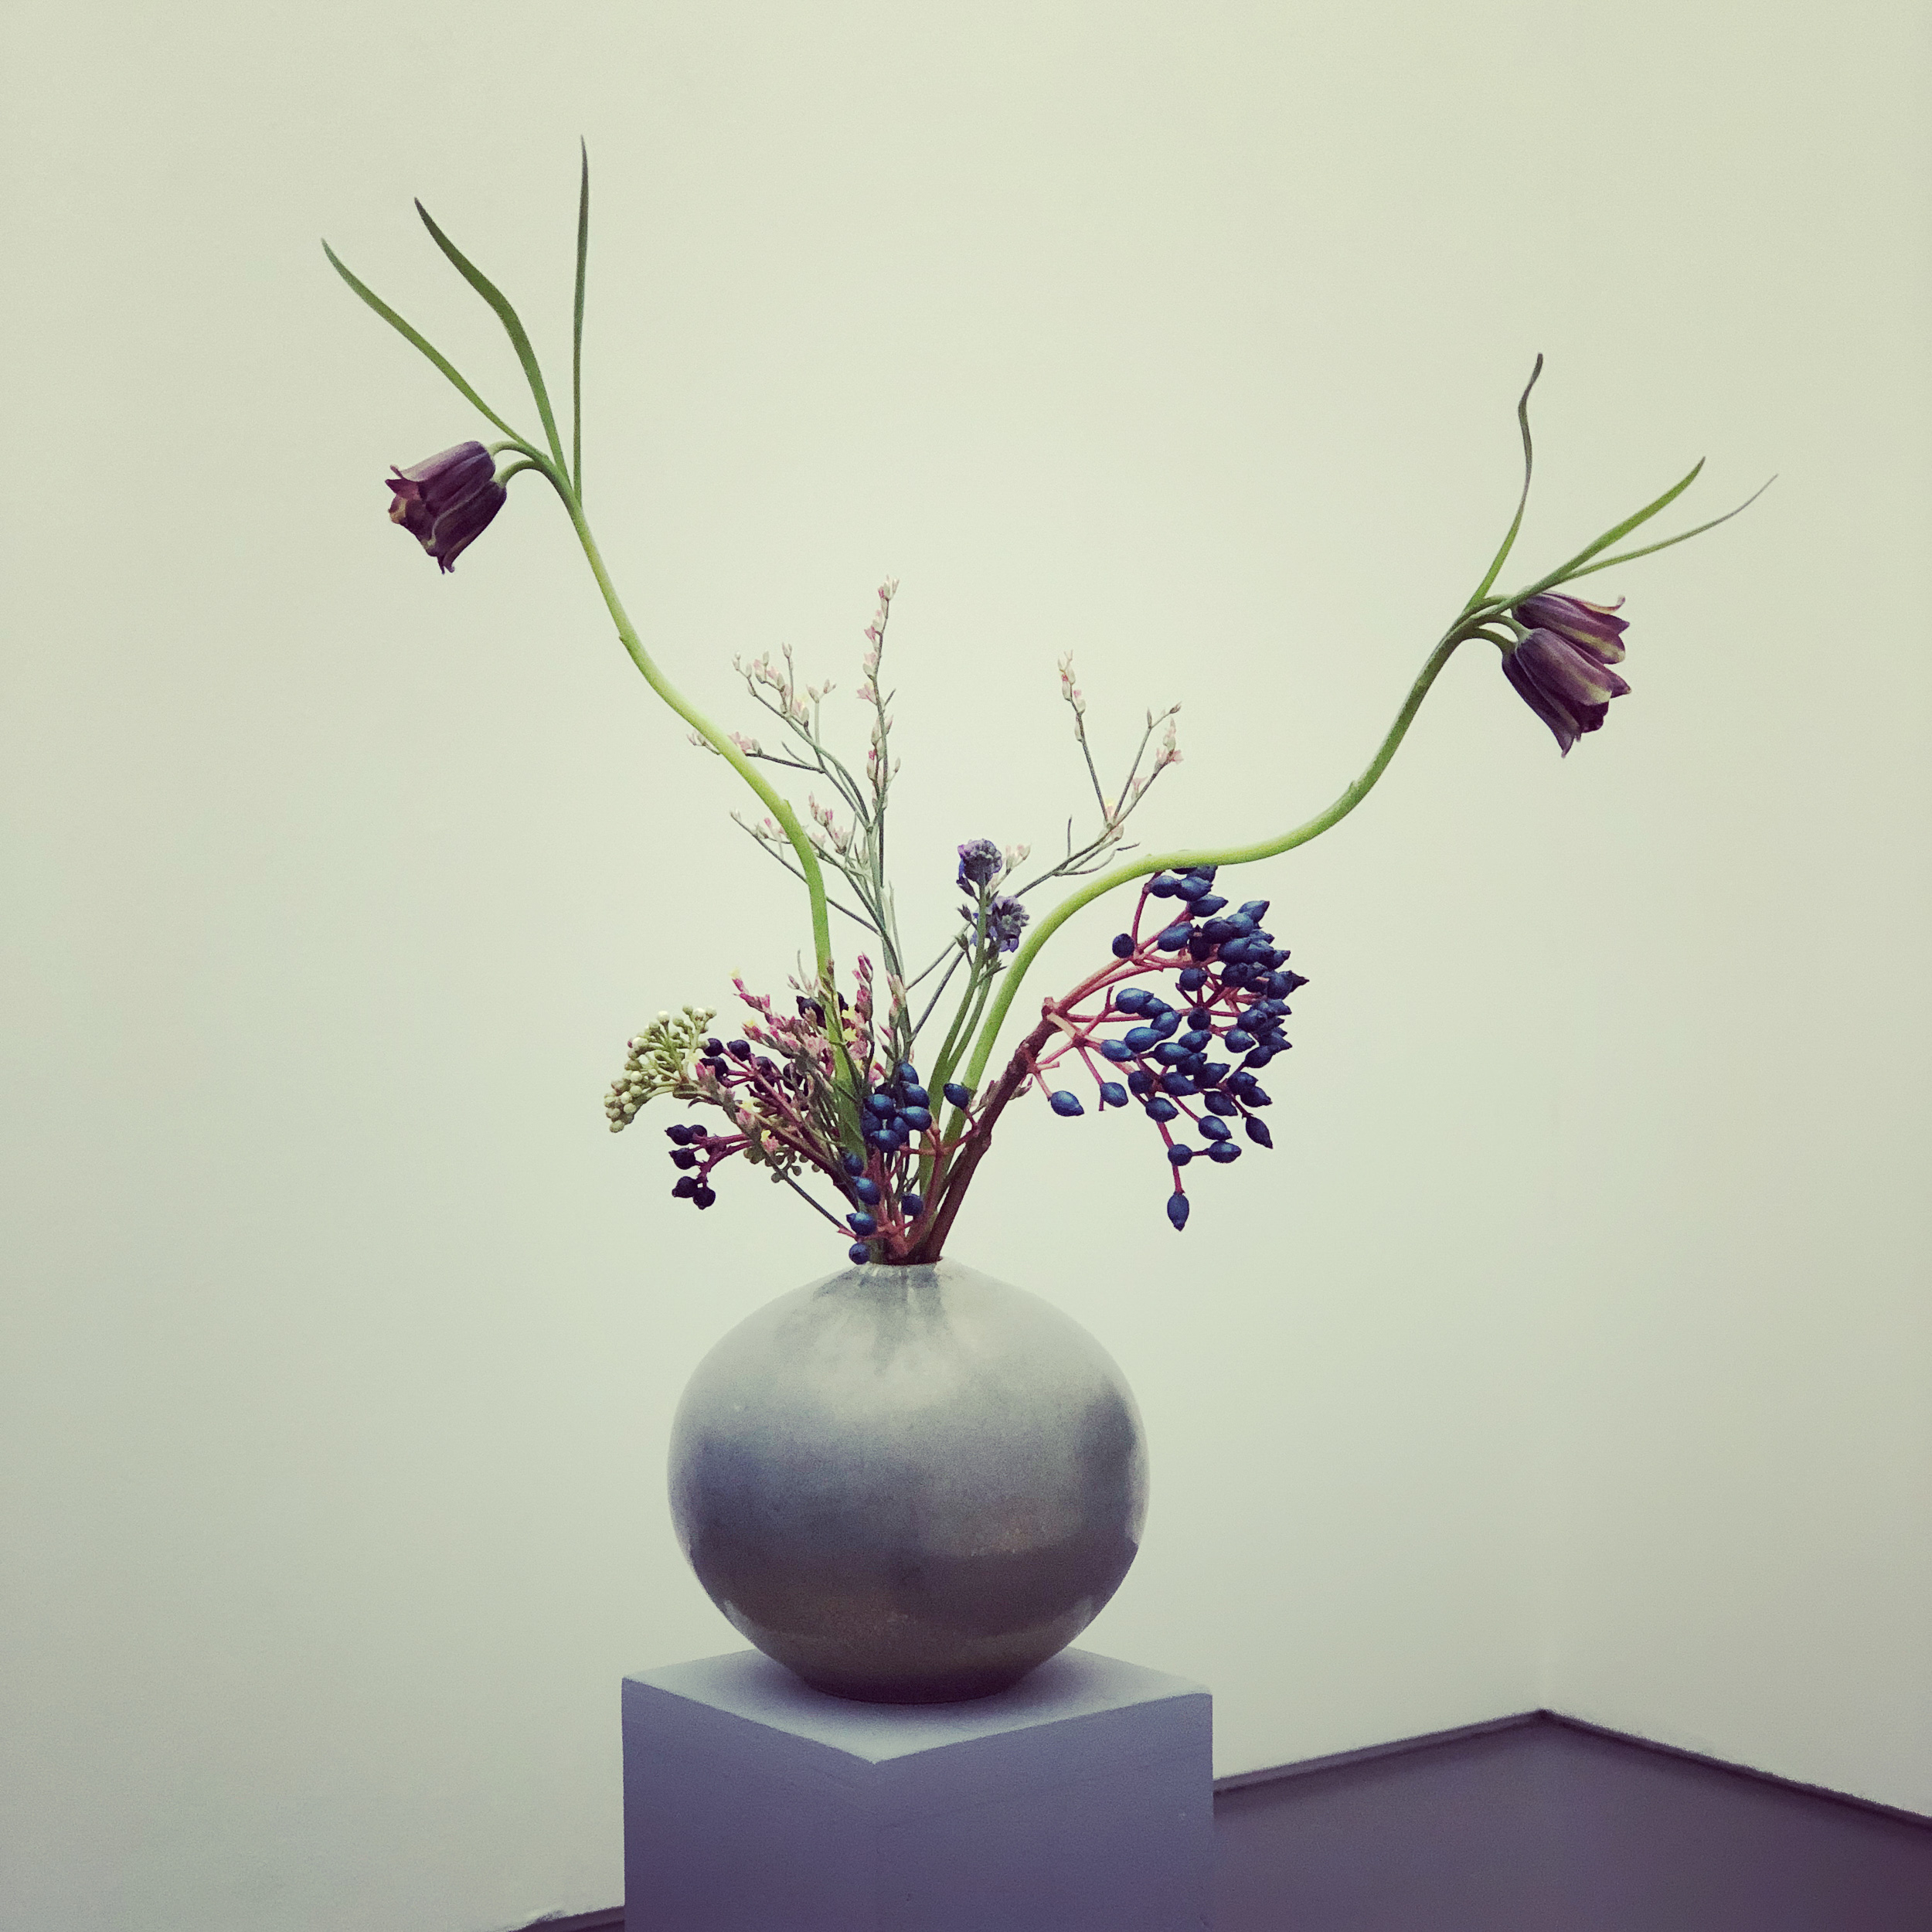 Flowers for art